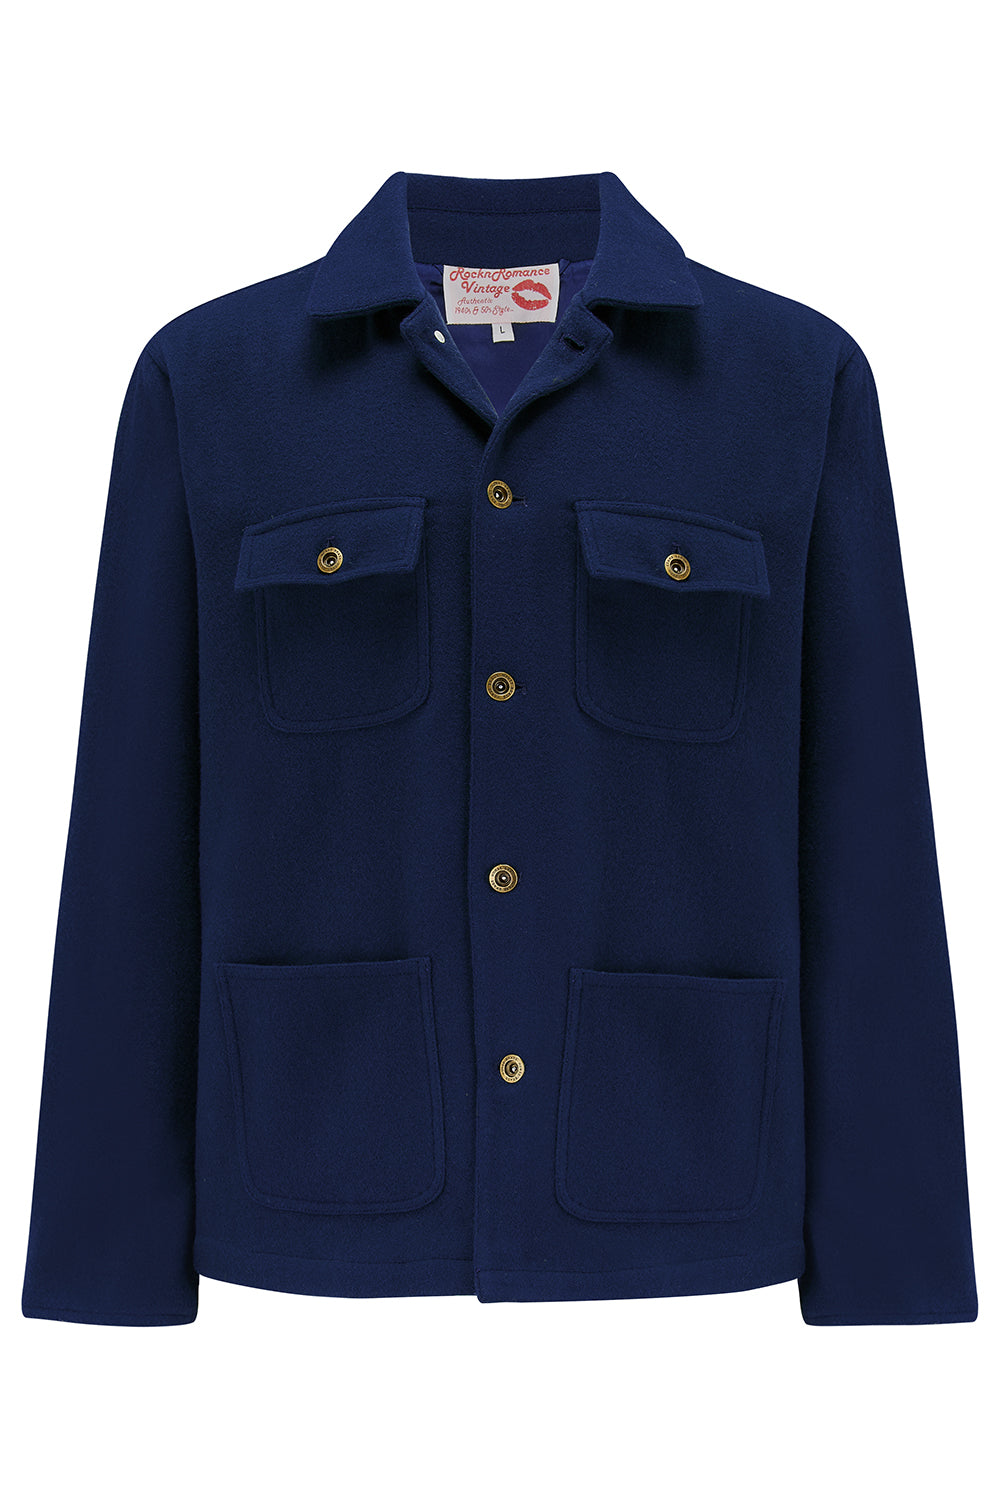 Die „Bronson“ Herren-Arbeitsjacke in Marineblau, außen aus 100 % Wolle. Rockabilly-Vintage-Stil der 1950er Jahre